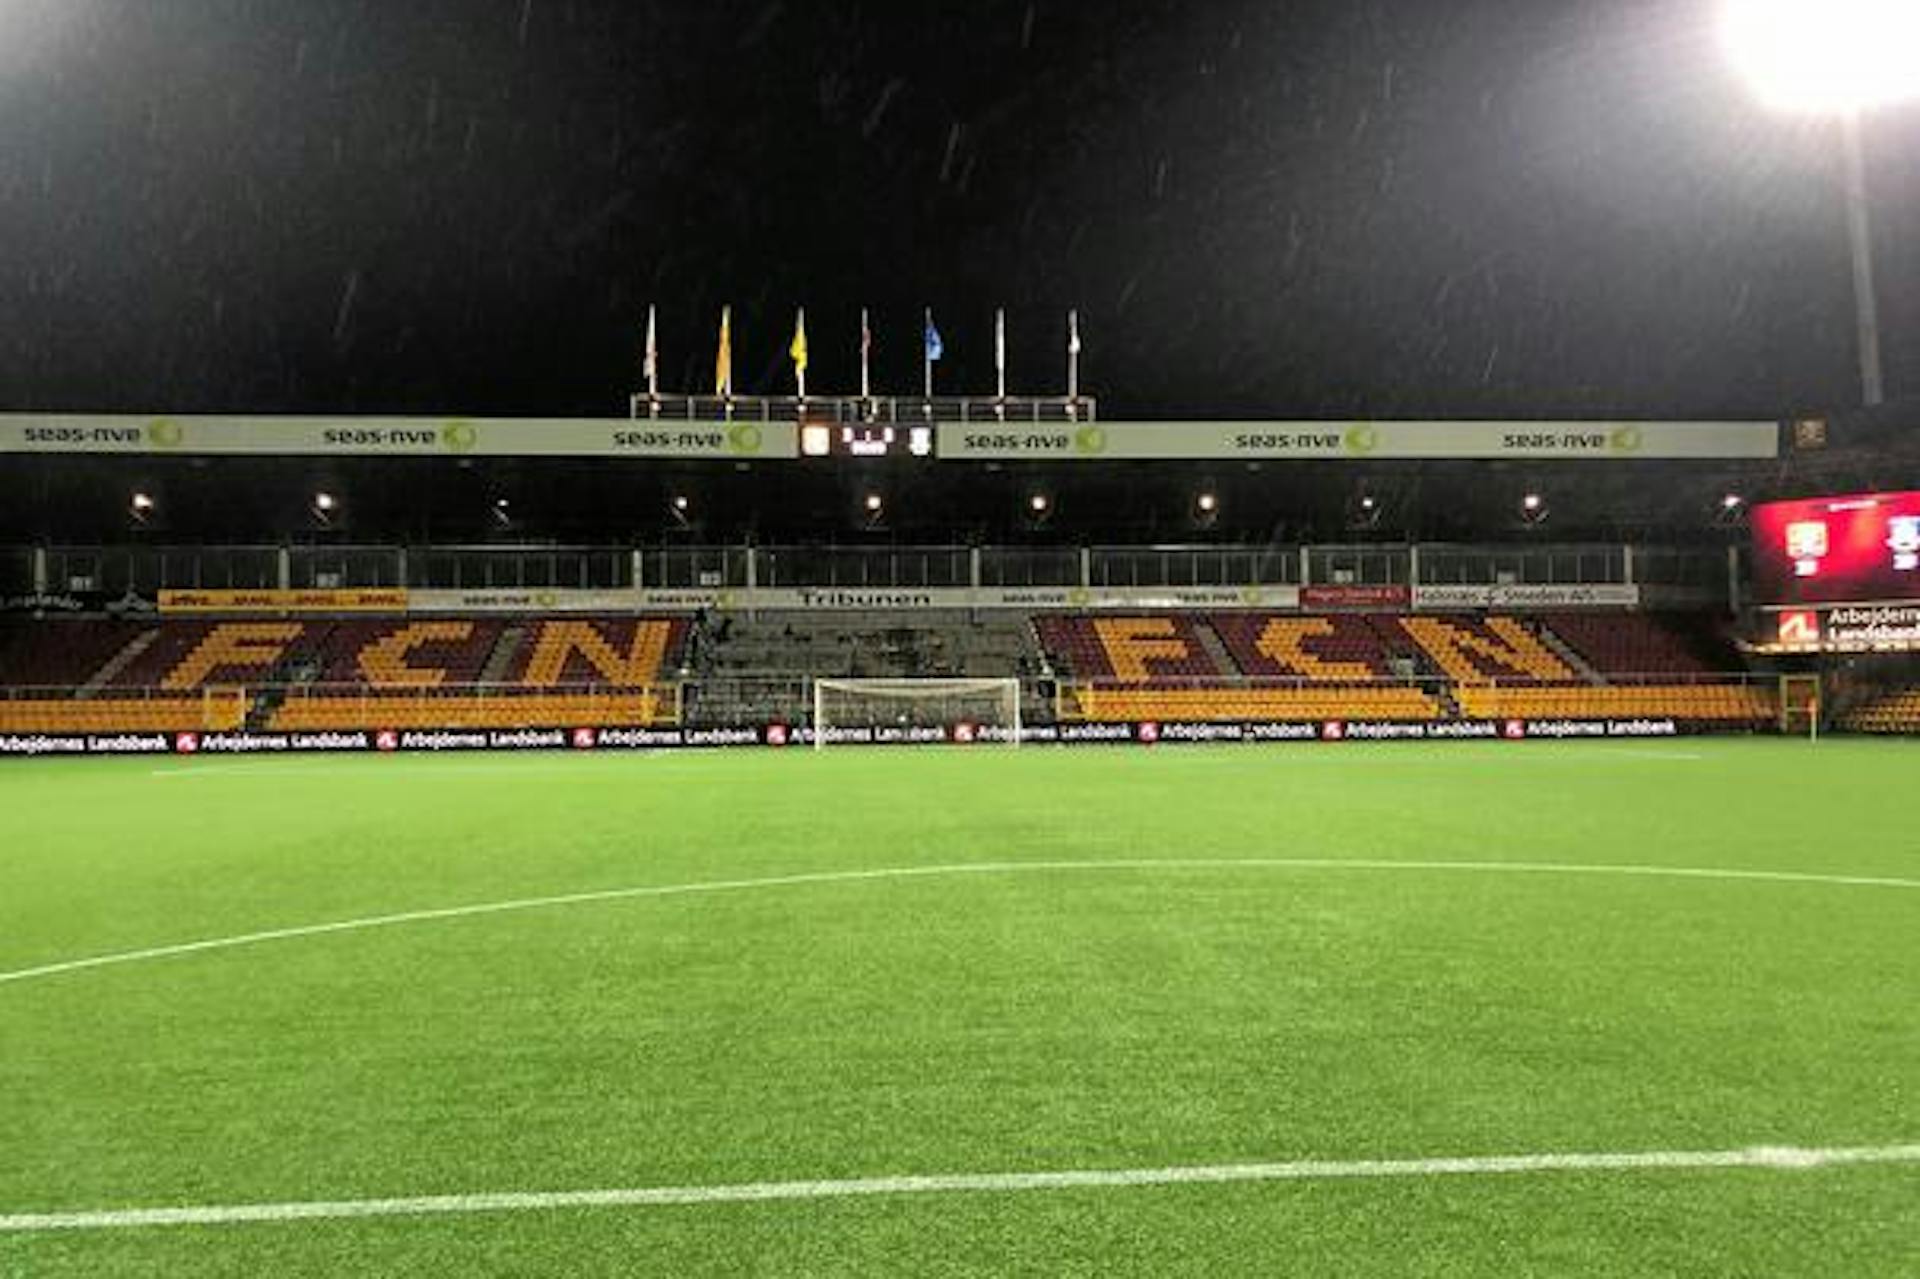 Football Club Nordsjælland (FCN) photo of a football field